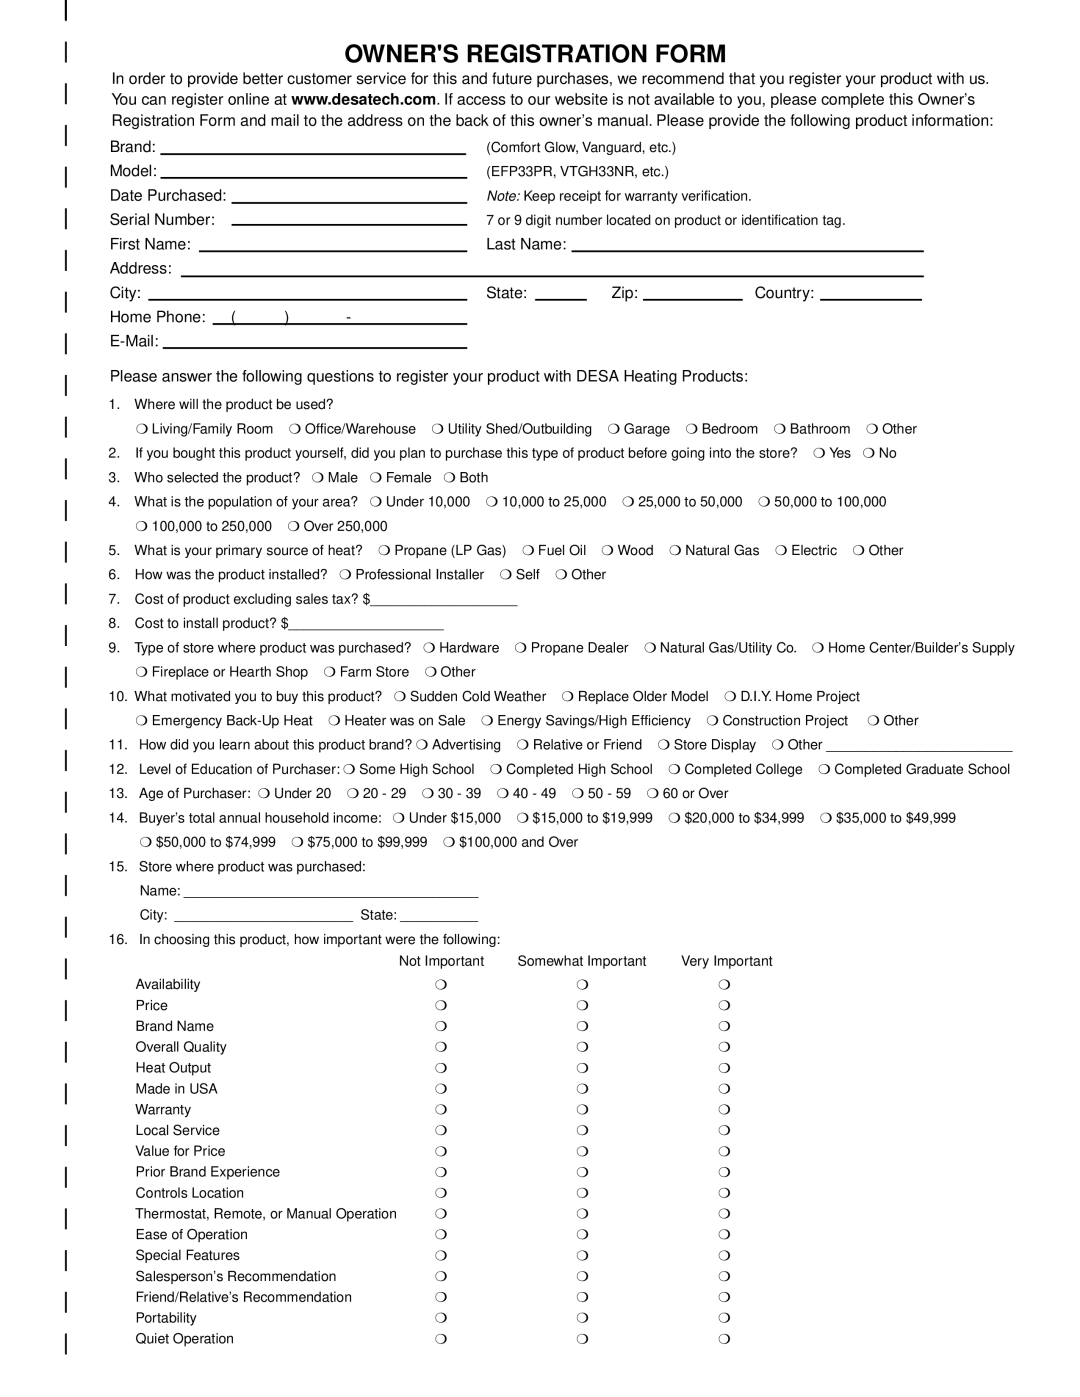 Desa R, V, T, 30 installation manual Owners Registration Form 